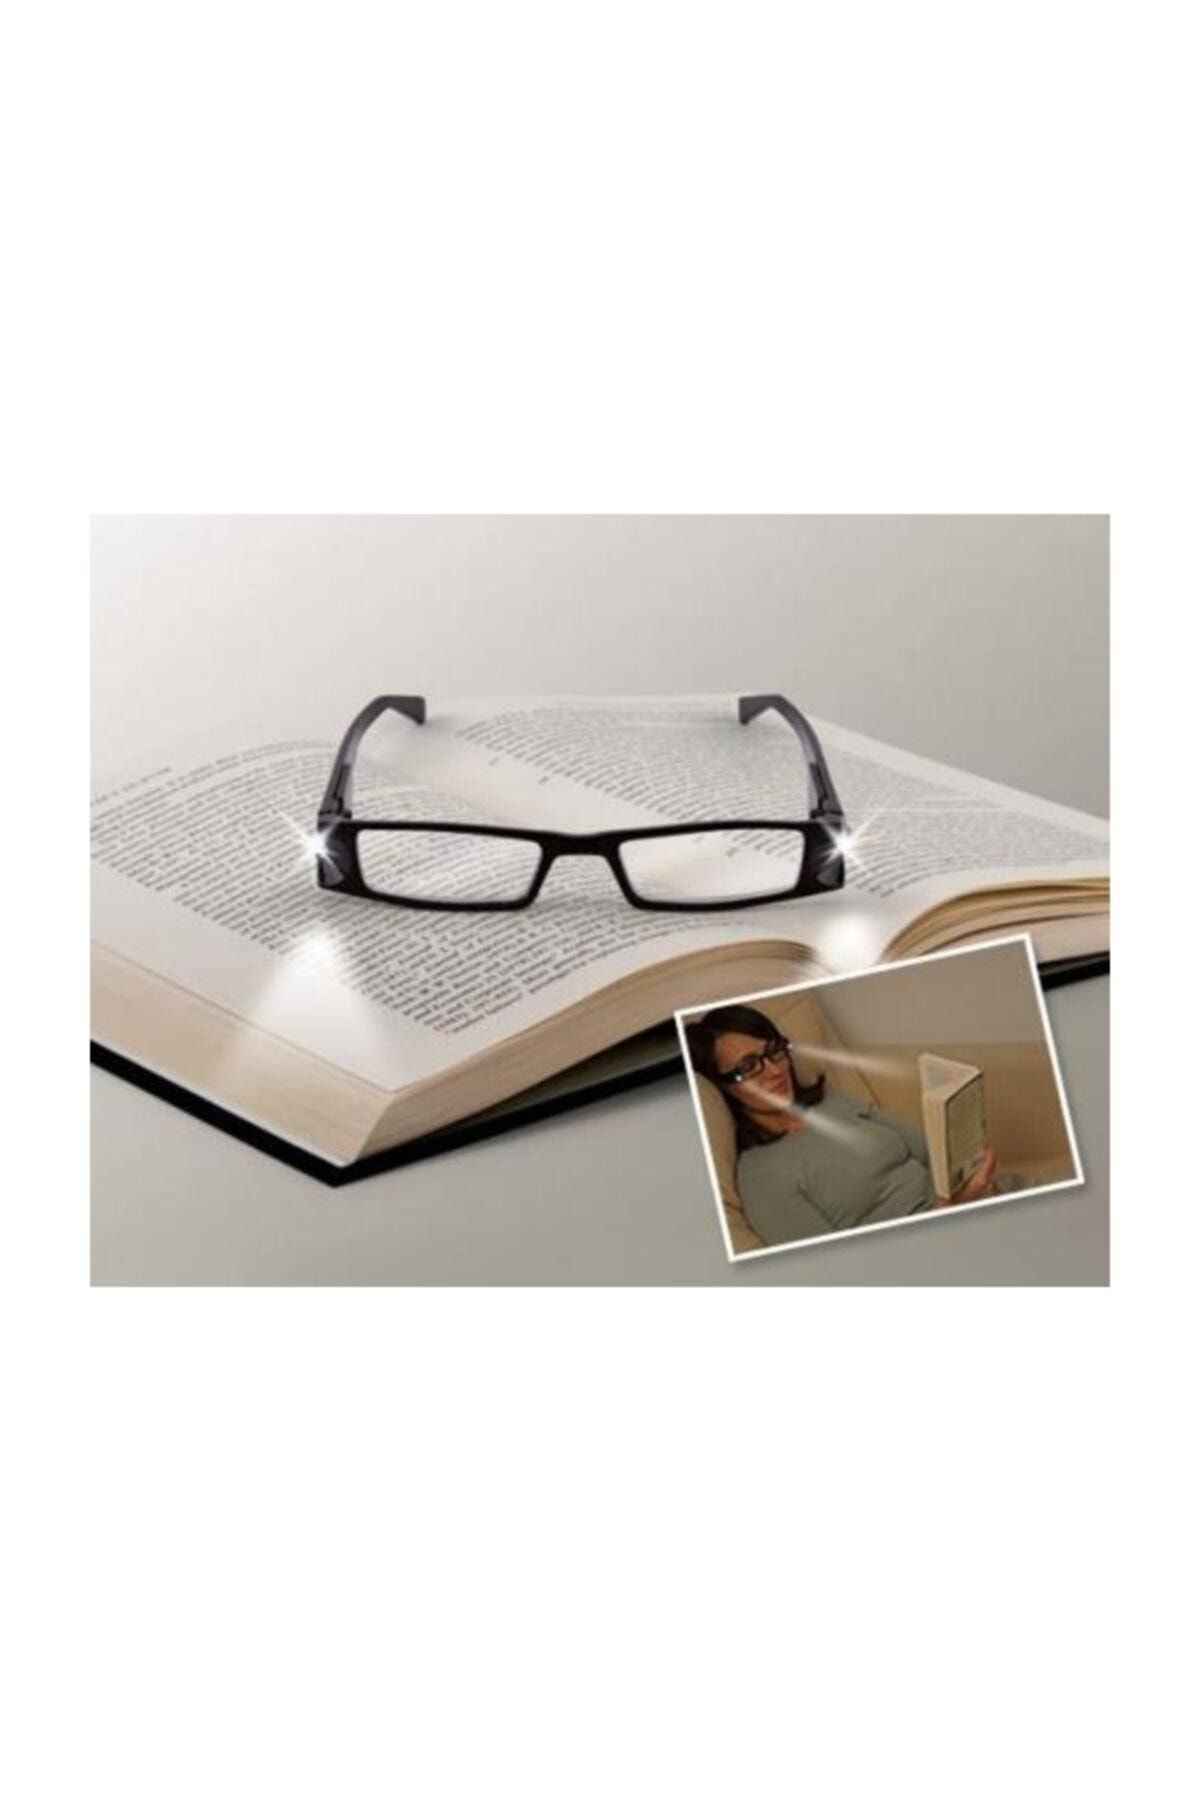 Arsimo Kitap Gözlüğü Okuma Led Işıklı 2 Led Gözlük Okuma Pilli Gözlük